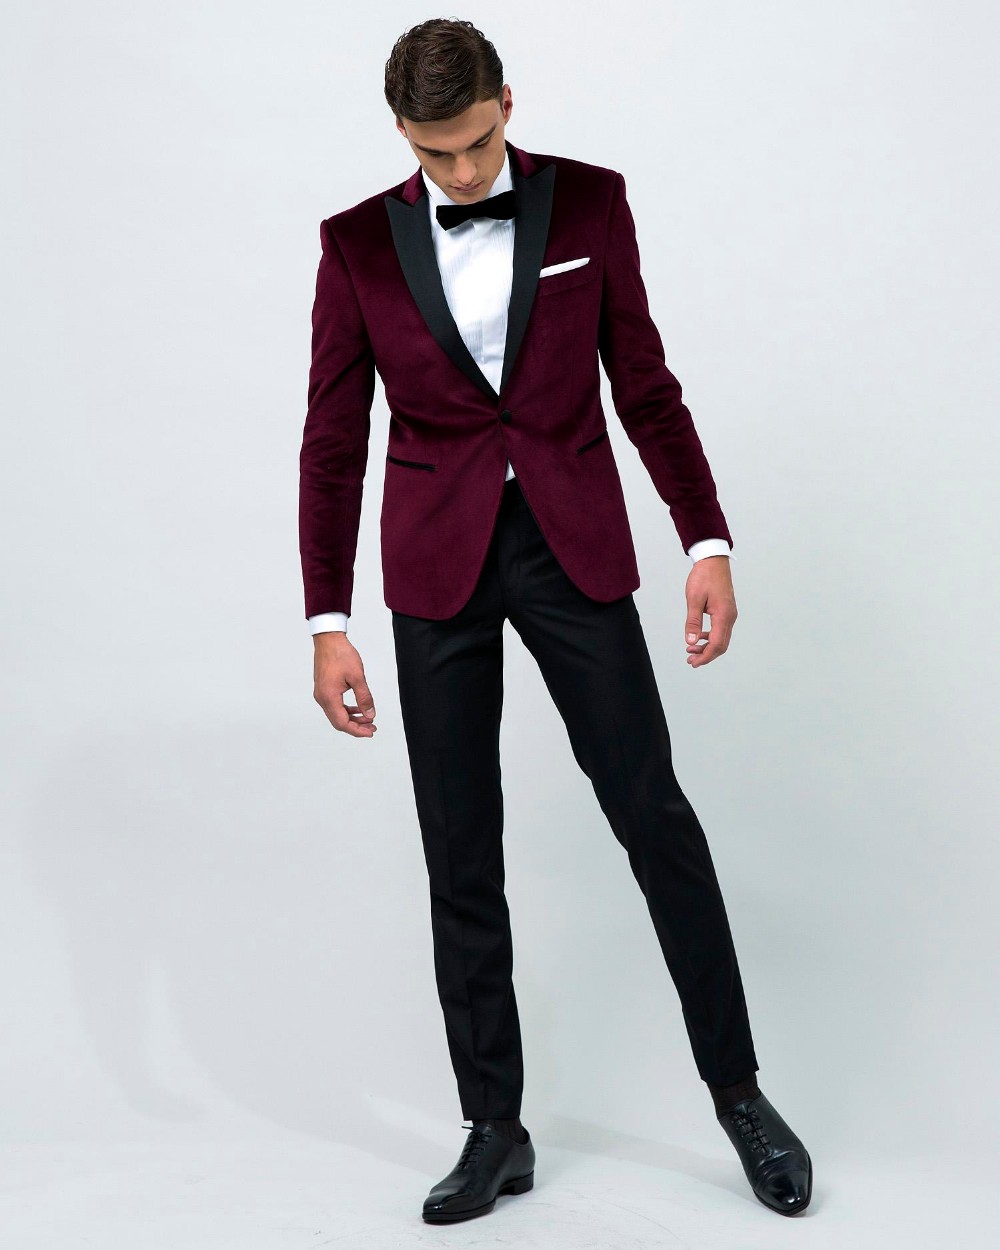 Airtailors vintage Velvet Wine Red Peak Lapel Tuxedo/wedding Suit for men /Groom wear custom make (jacket+pant+bow)